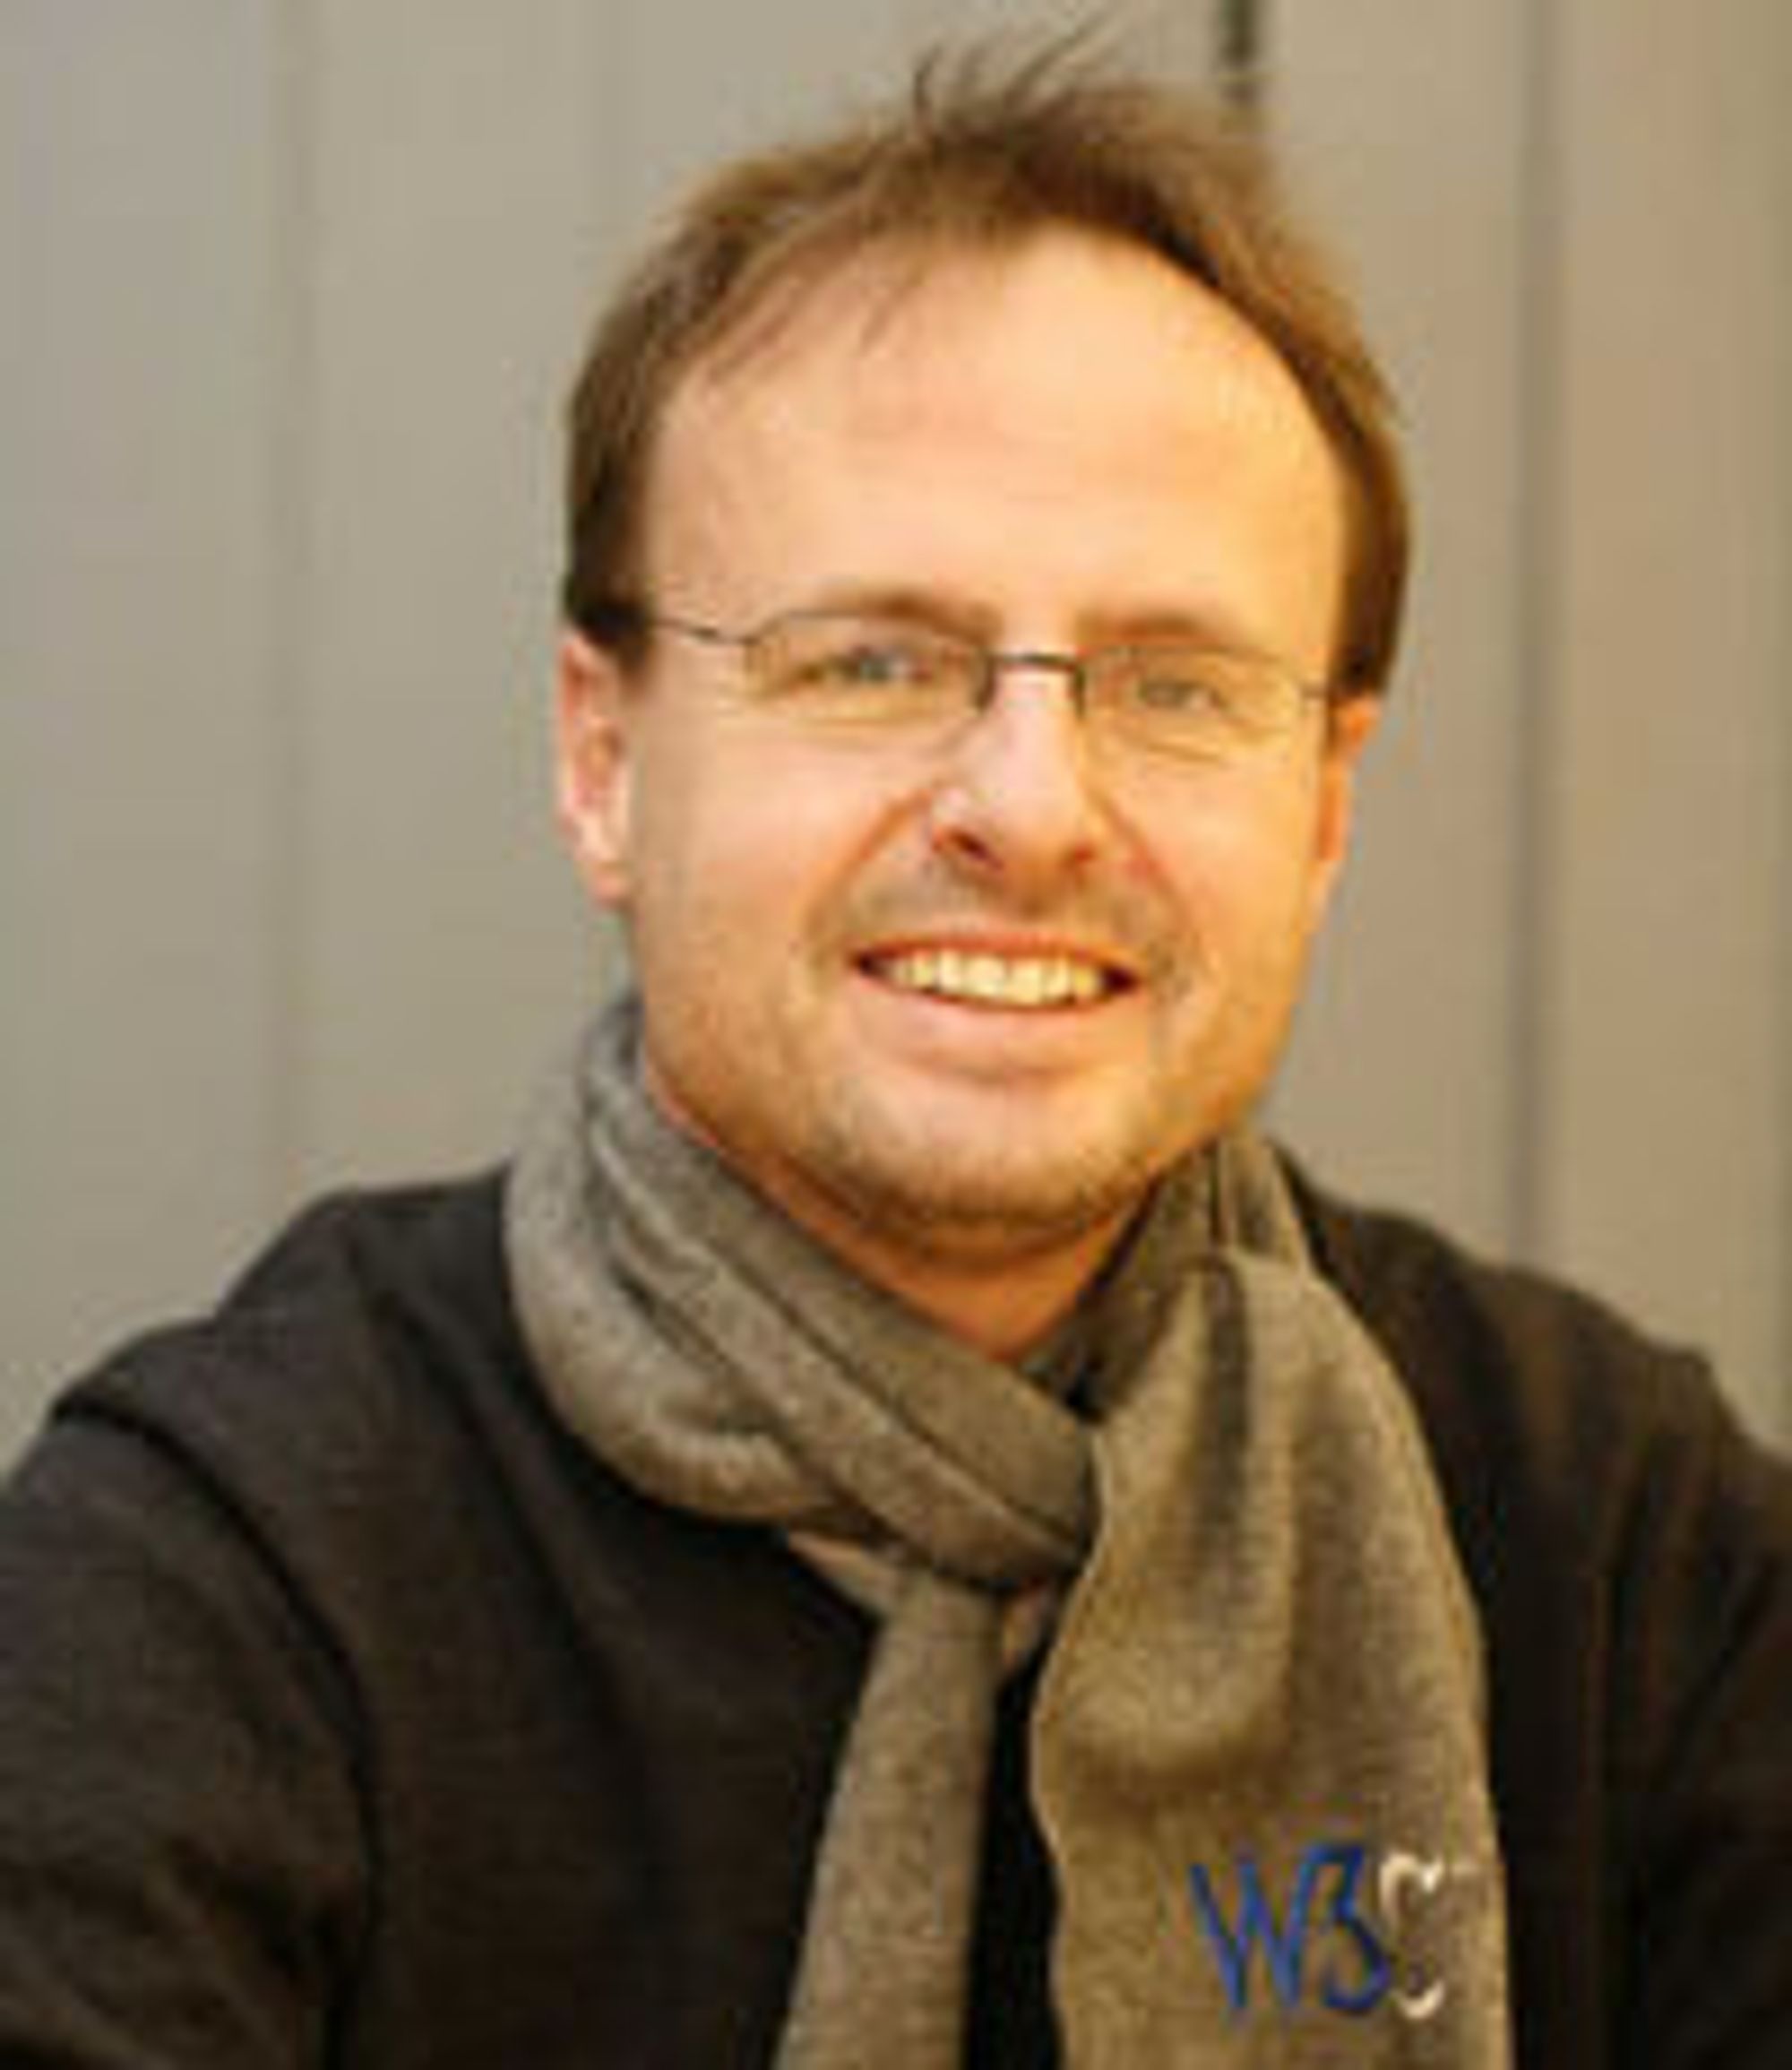 Håkon Wium Lie, teknisk sjef i  Opera Software og mannen bak CSS.